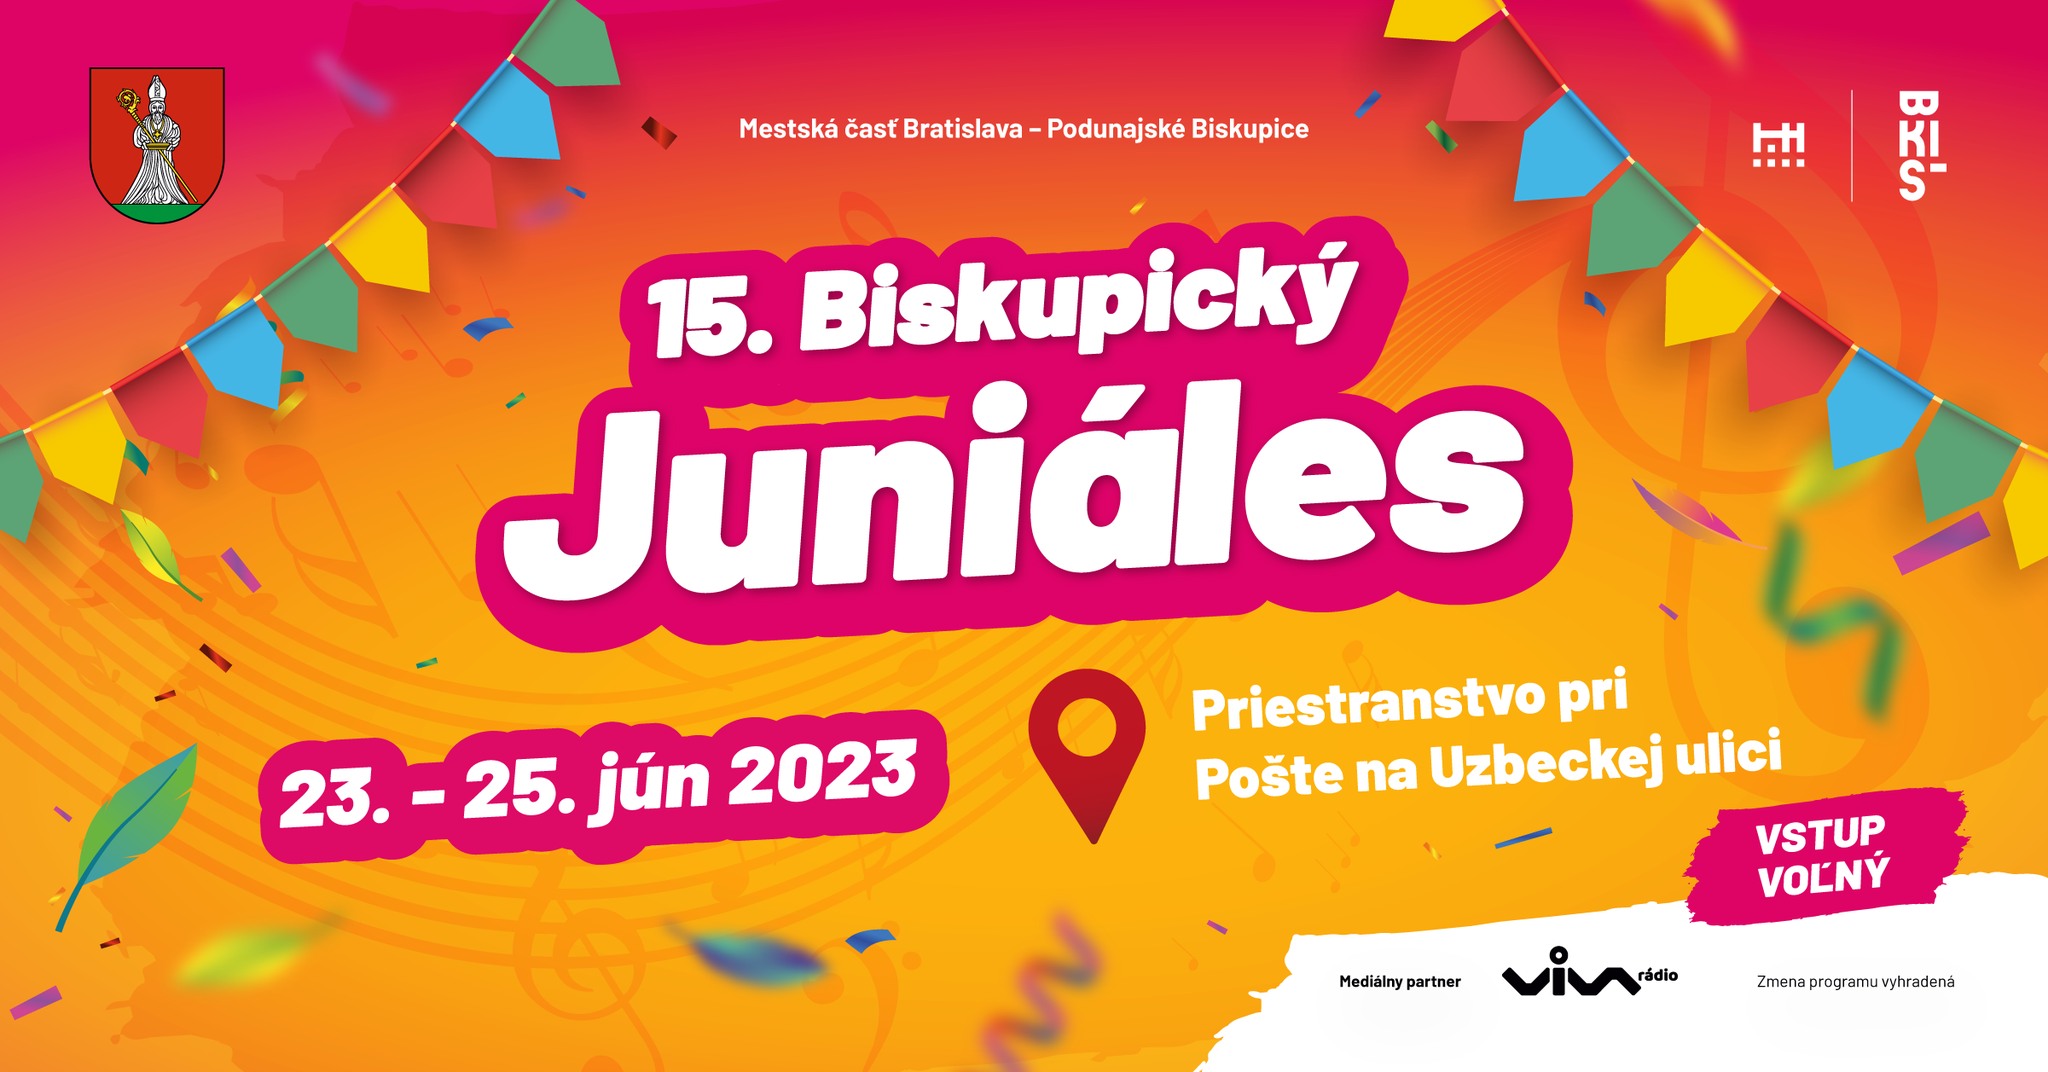 Biskupick juniles 2023 Bratislava - 15. ronk